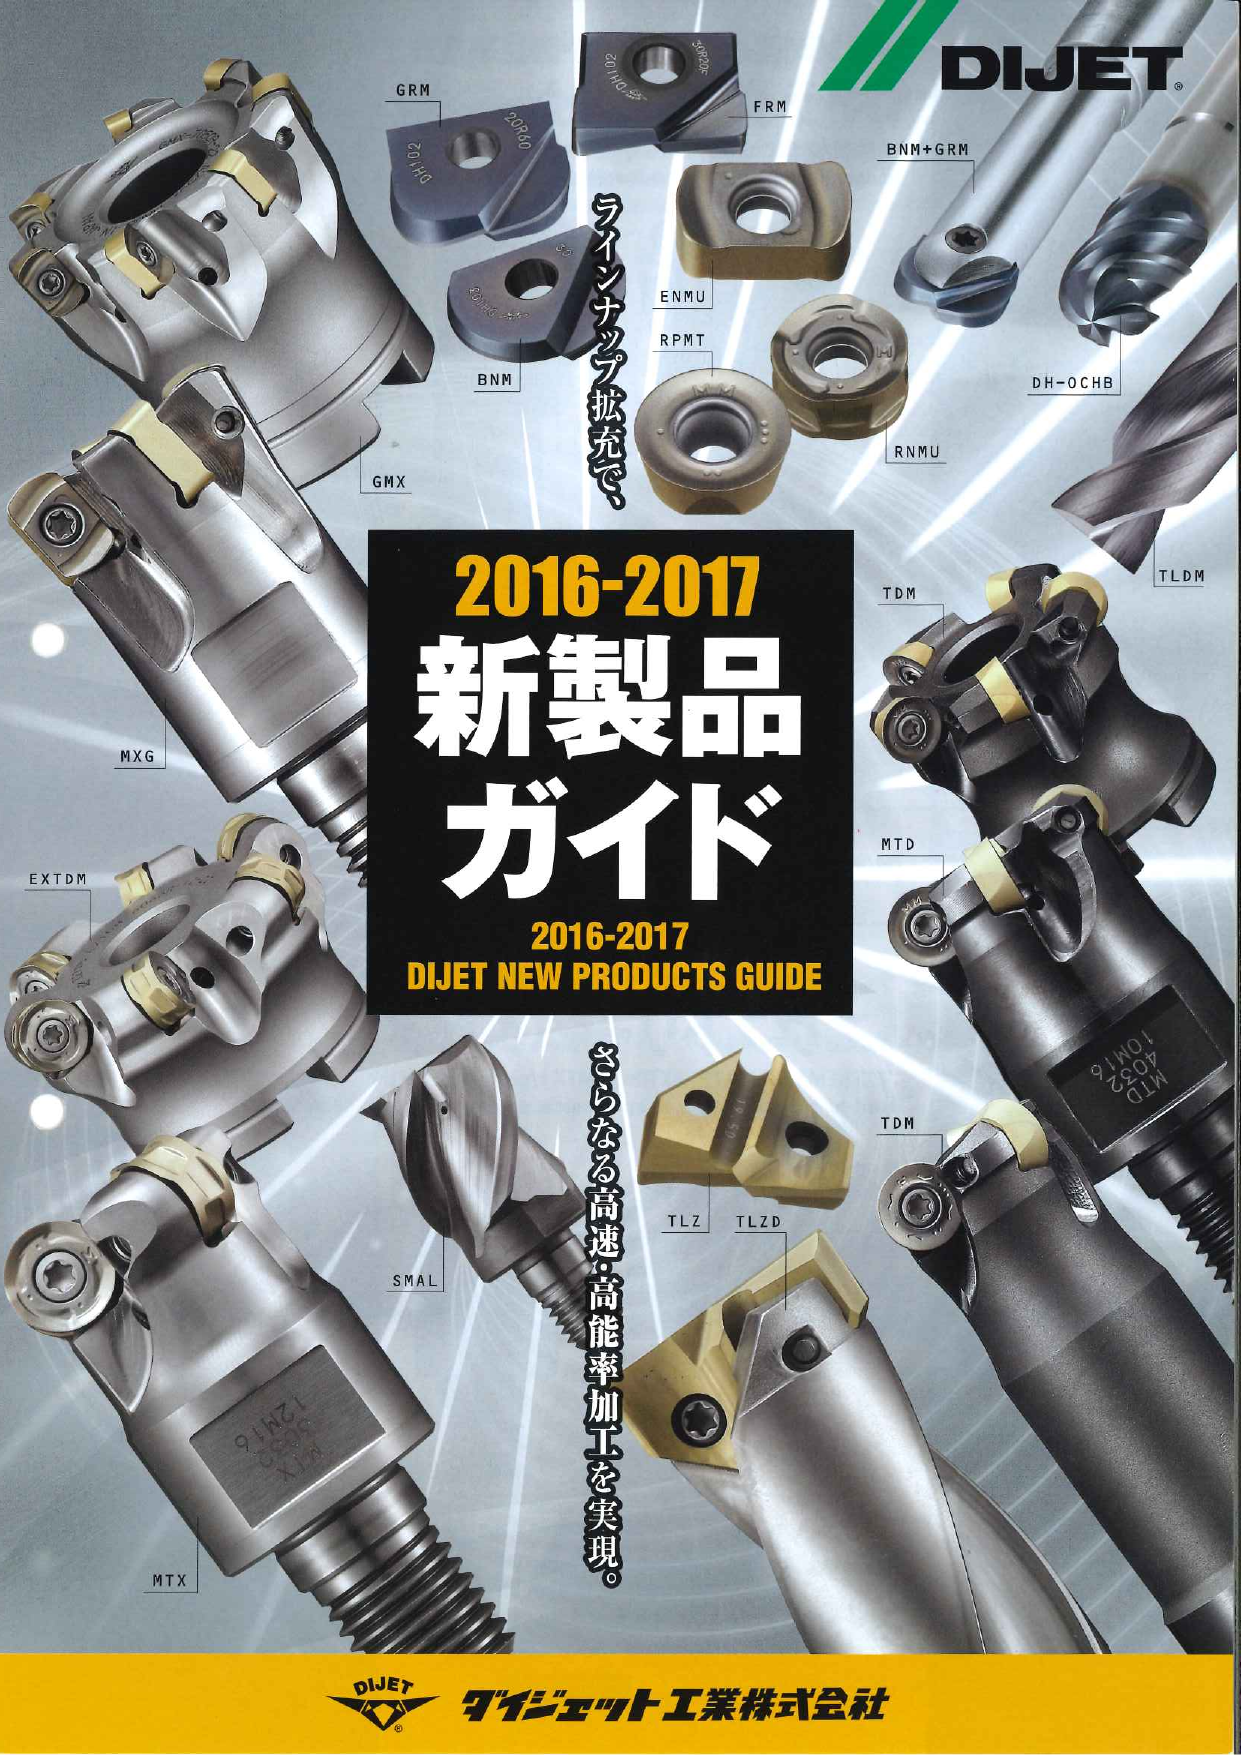 超硬工具専業メーカー 2016-2017新製品ガイド（ダイジェット工業株式会社）のカタログ無料ダウンロード | Apérza Catalog